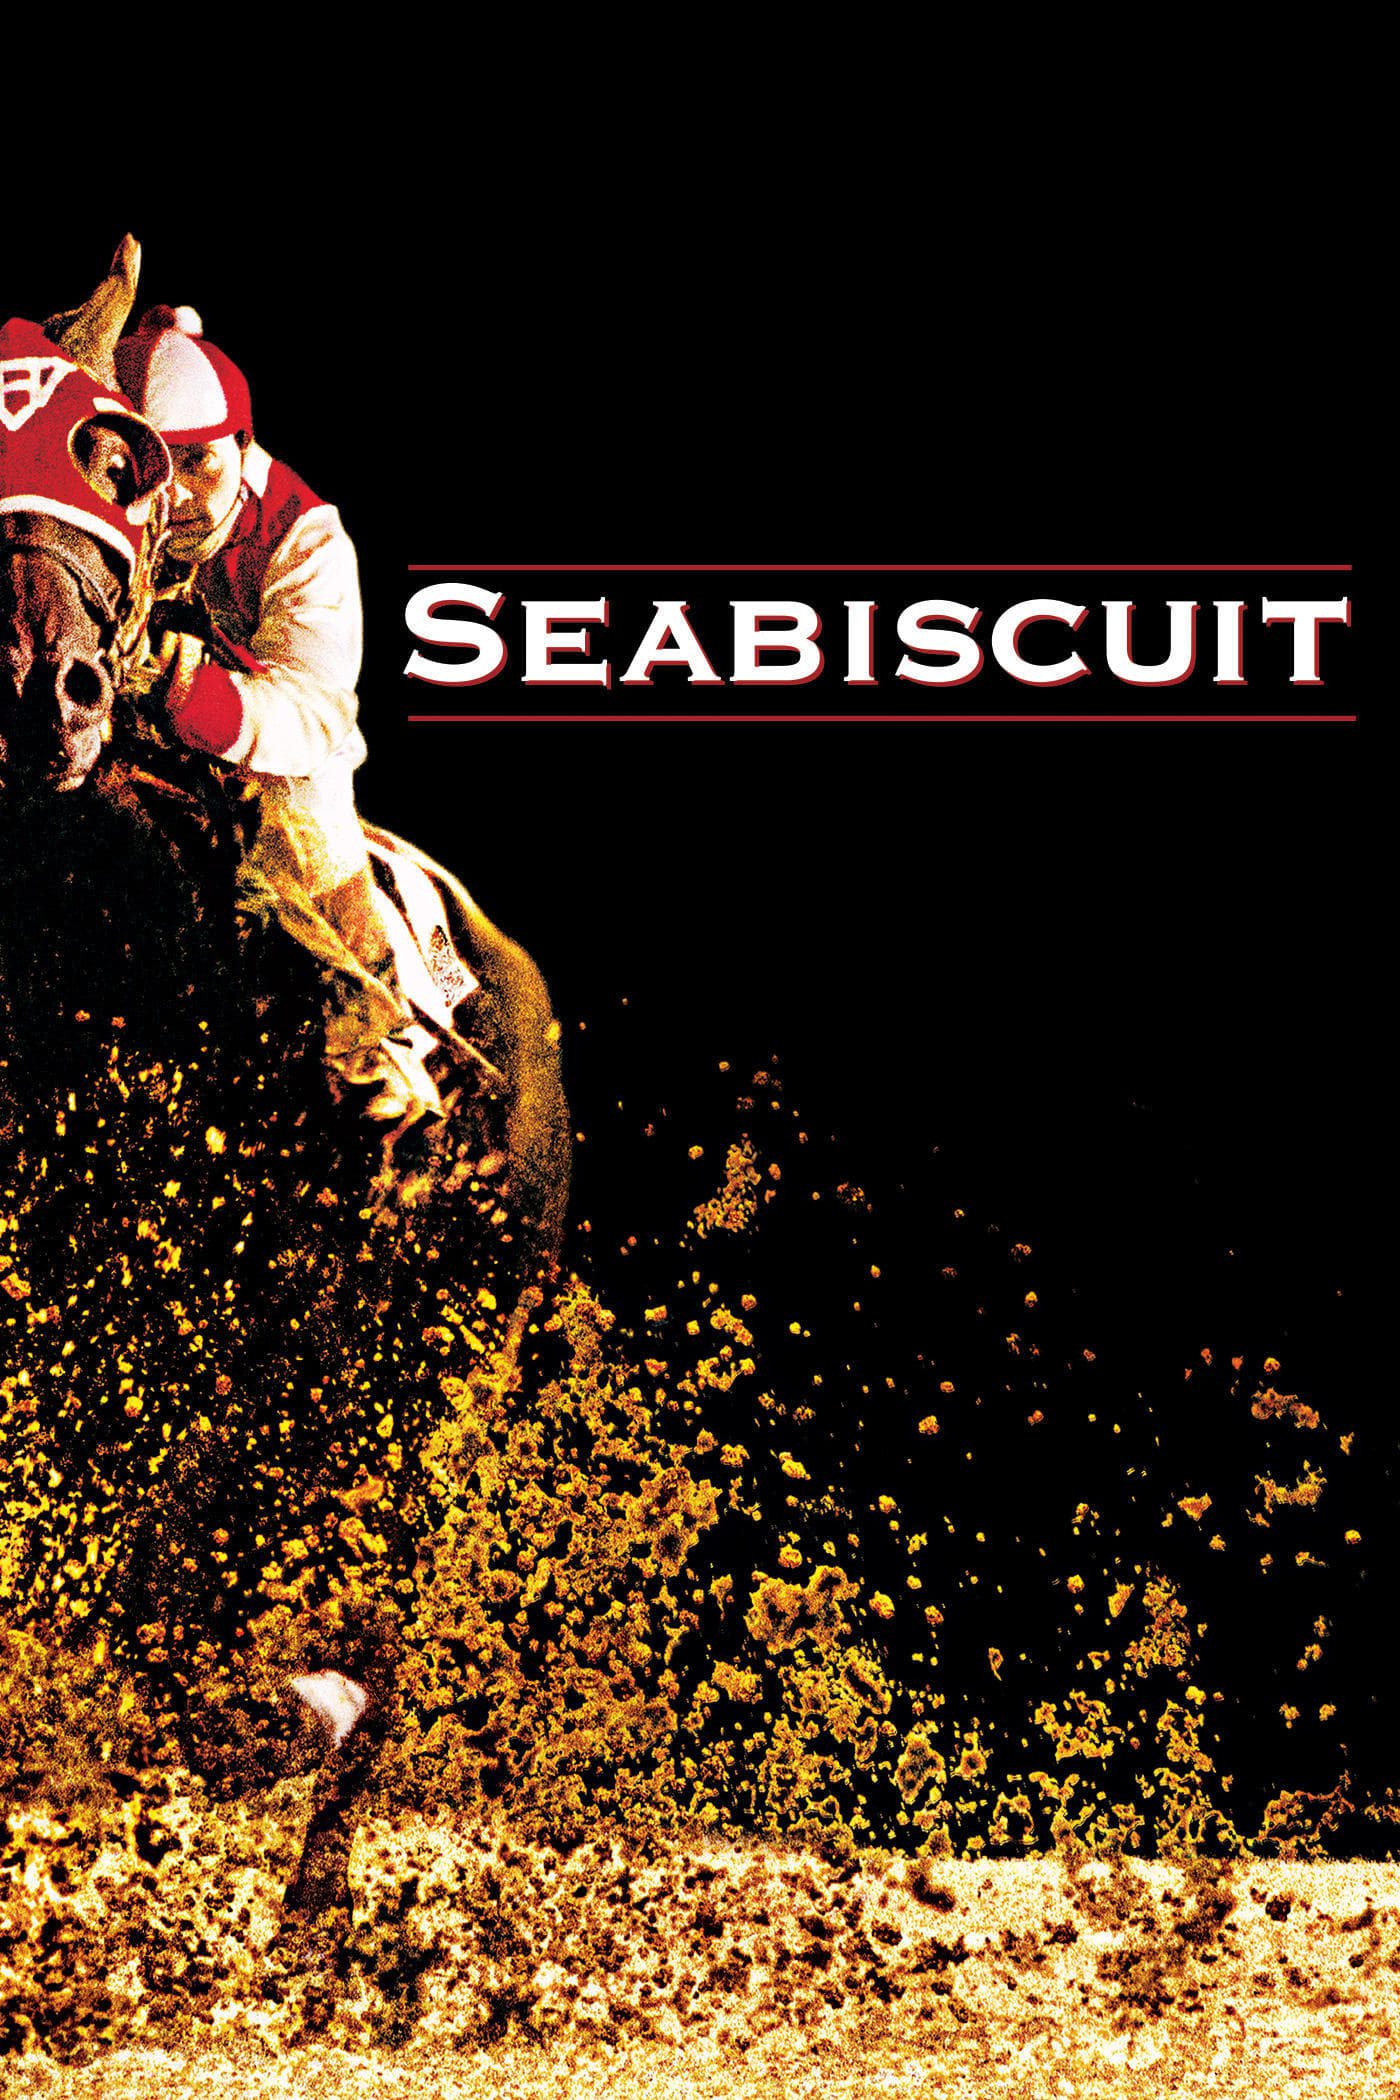 ดูหนังออนไลน์ฟรี Seabiscuit ซีบิสกิต ม้าพิชิตโลก